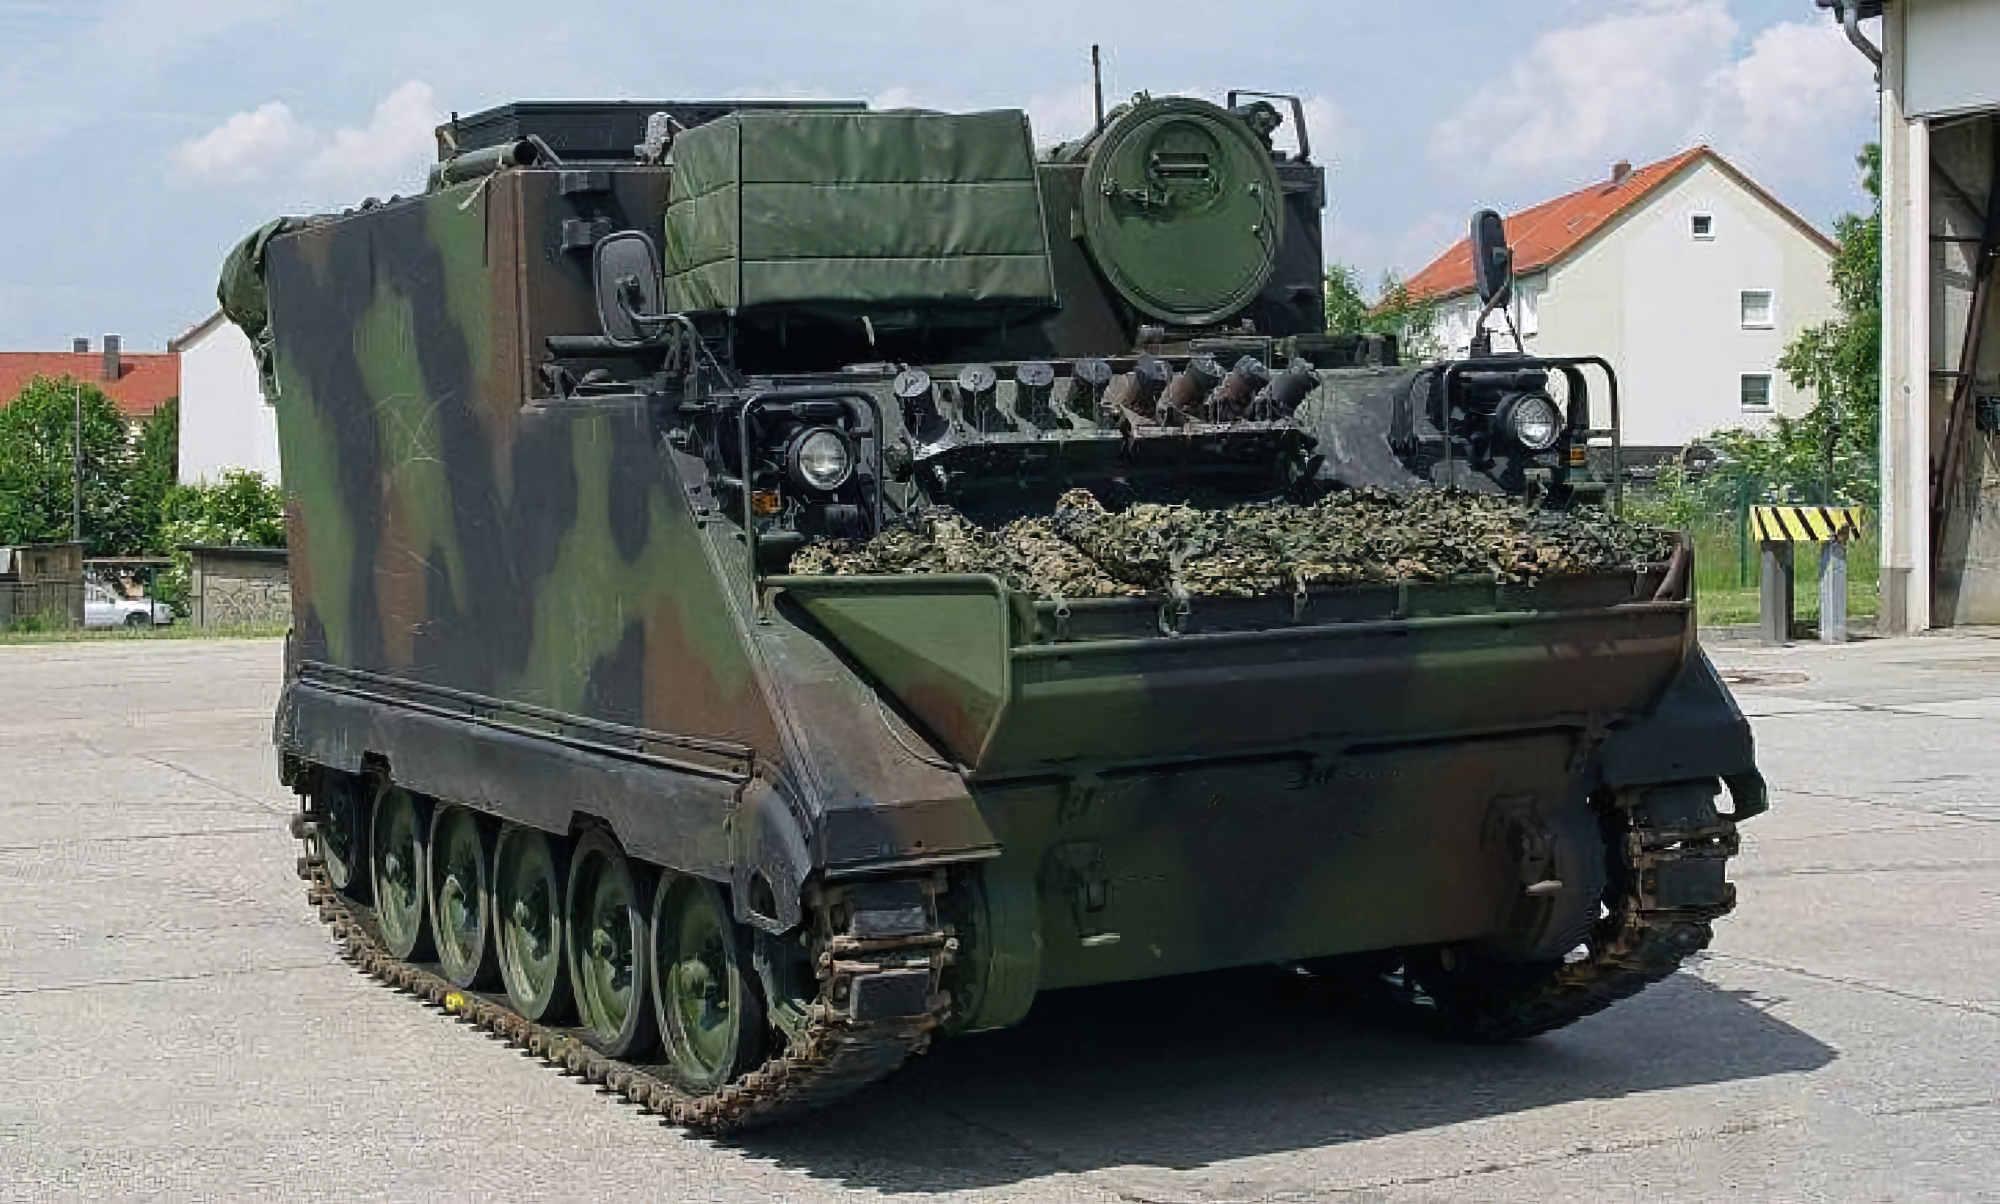 AFU mottok et nytt parti M577 kommando- og stabskjøretøyer basert på M113 pansrede personellkjøretøyer fra Litauen.